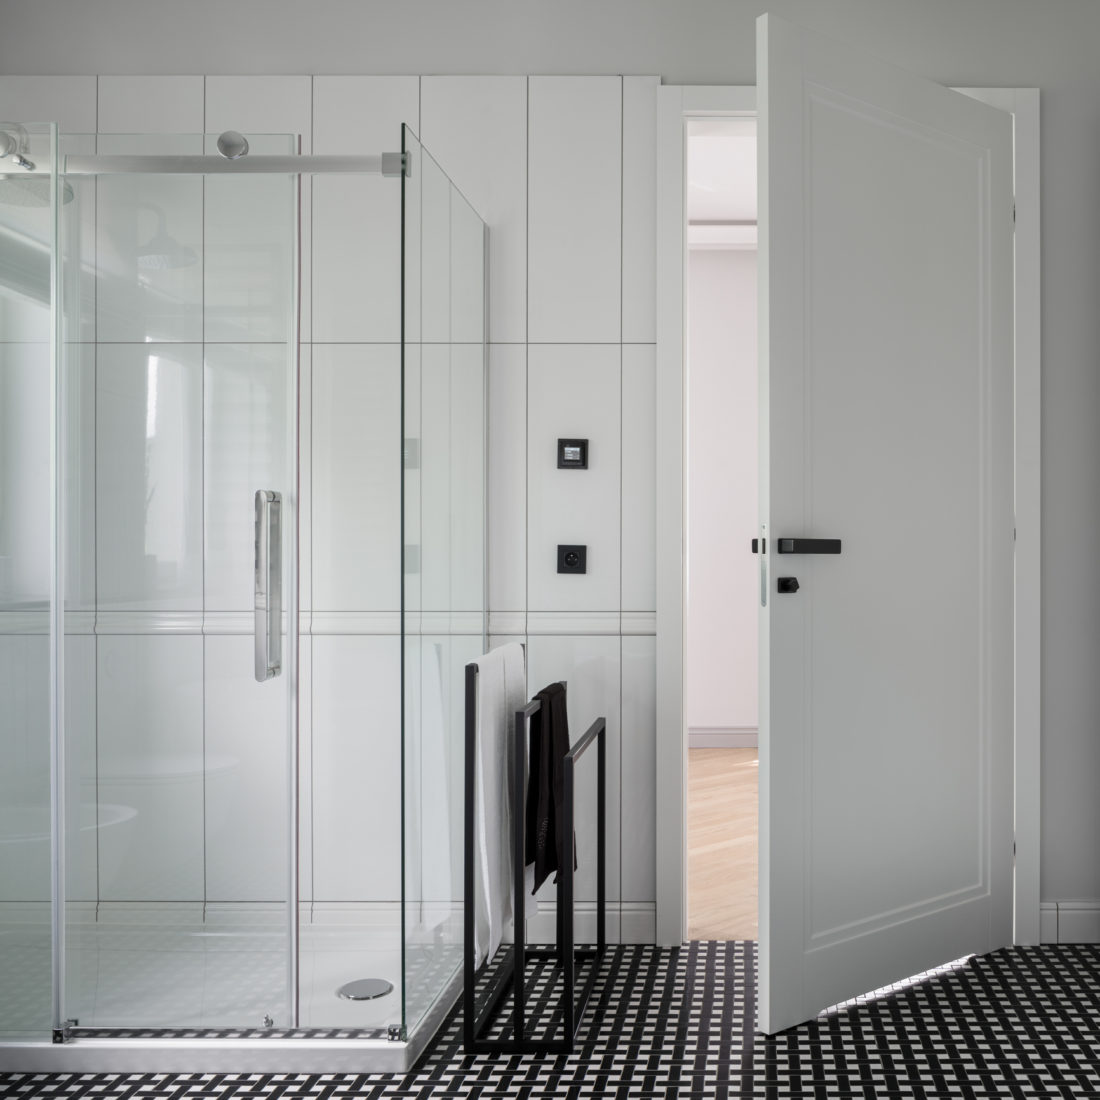 Bañera y cabina de ducha con azulejos y pared de cristal situada